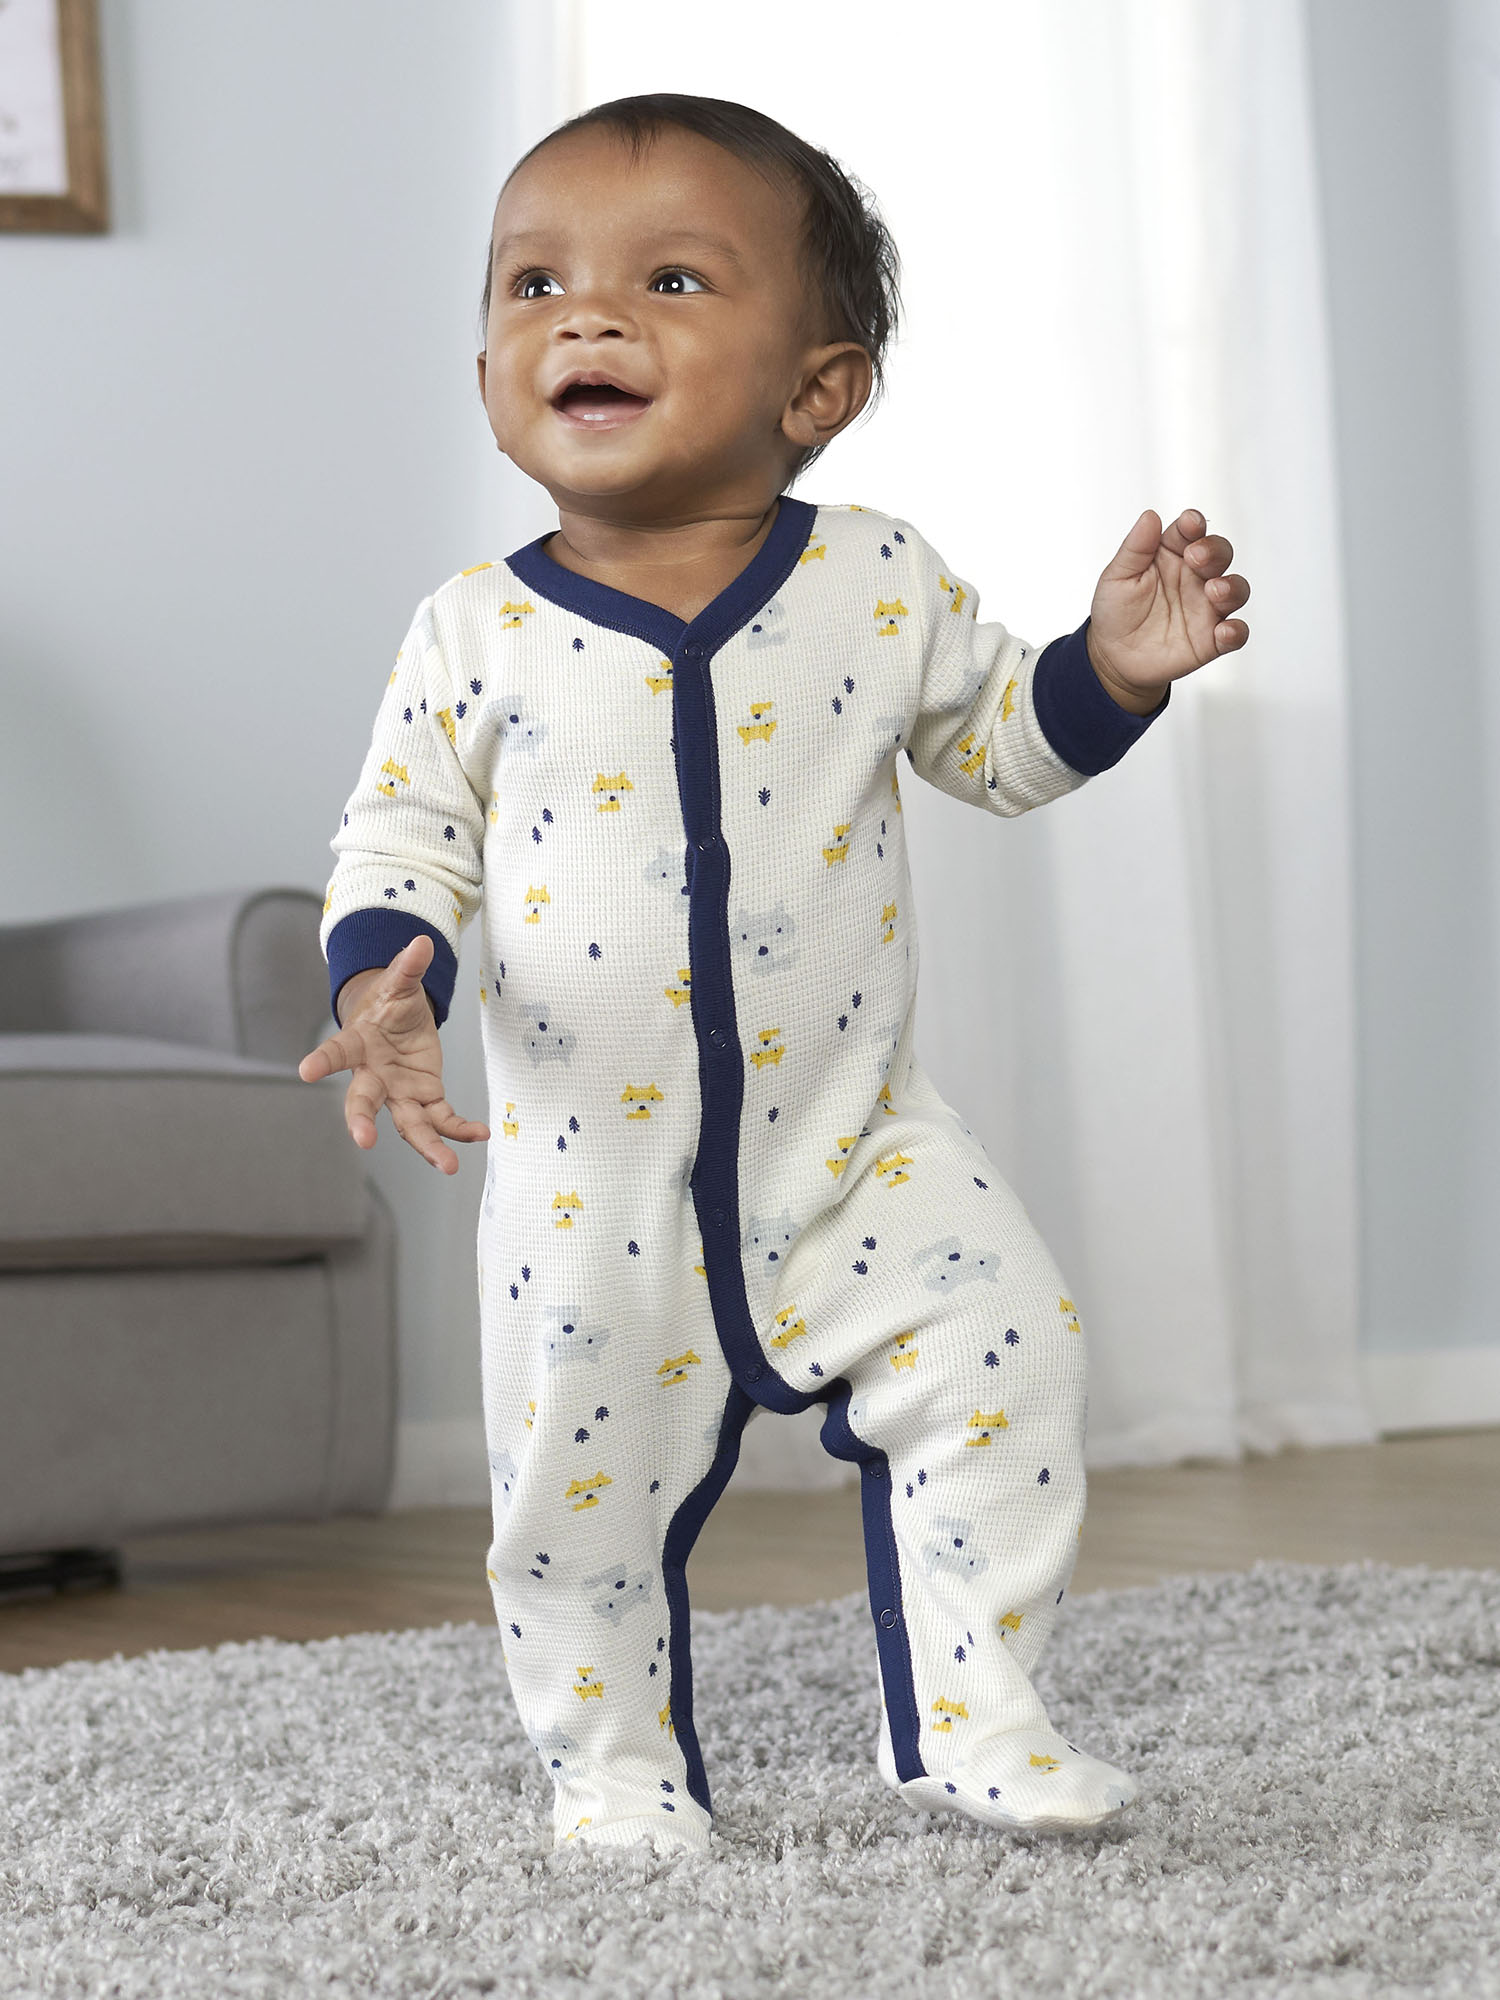 Gerber Baby Boy Thermal Footed Sleep 'N Play Pajamas, 2-Pack - image 5 of 11